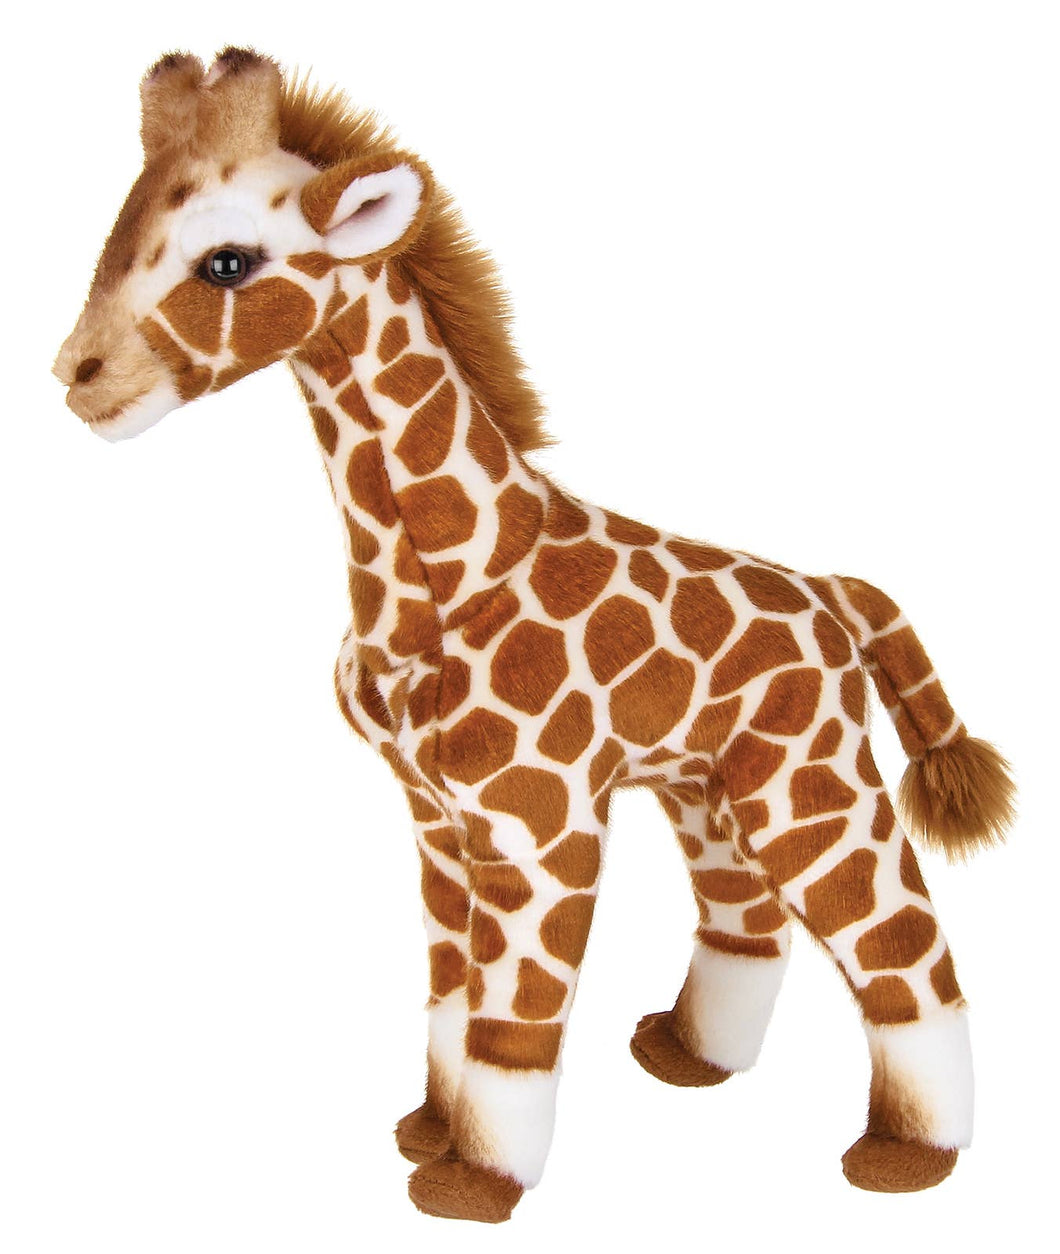 Twiggie The Plush Giraffe Stuffed Animal - Stuffed Animal